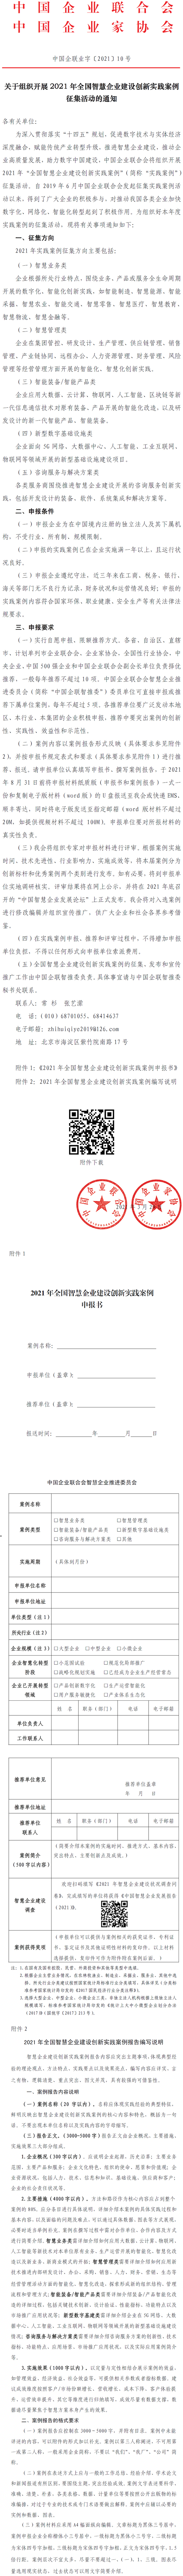 中国企联20210331.jpg